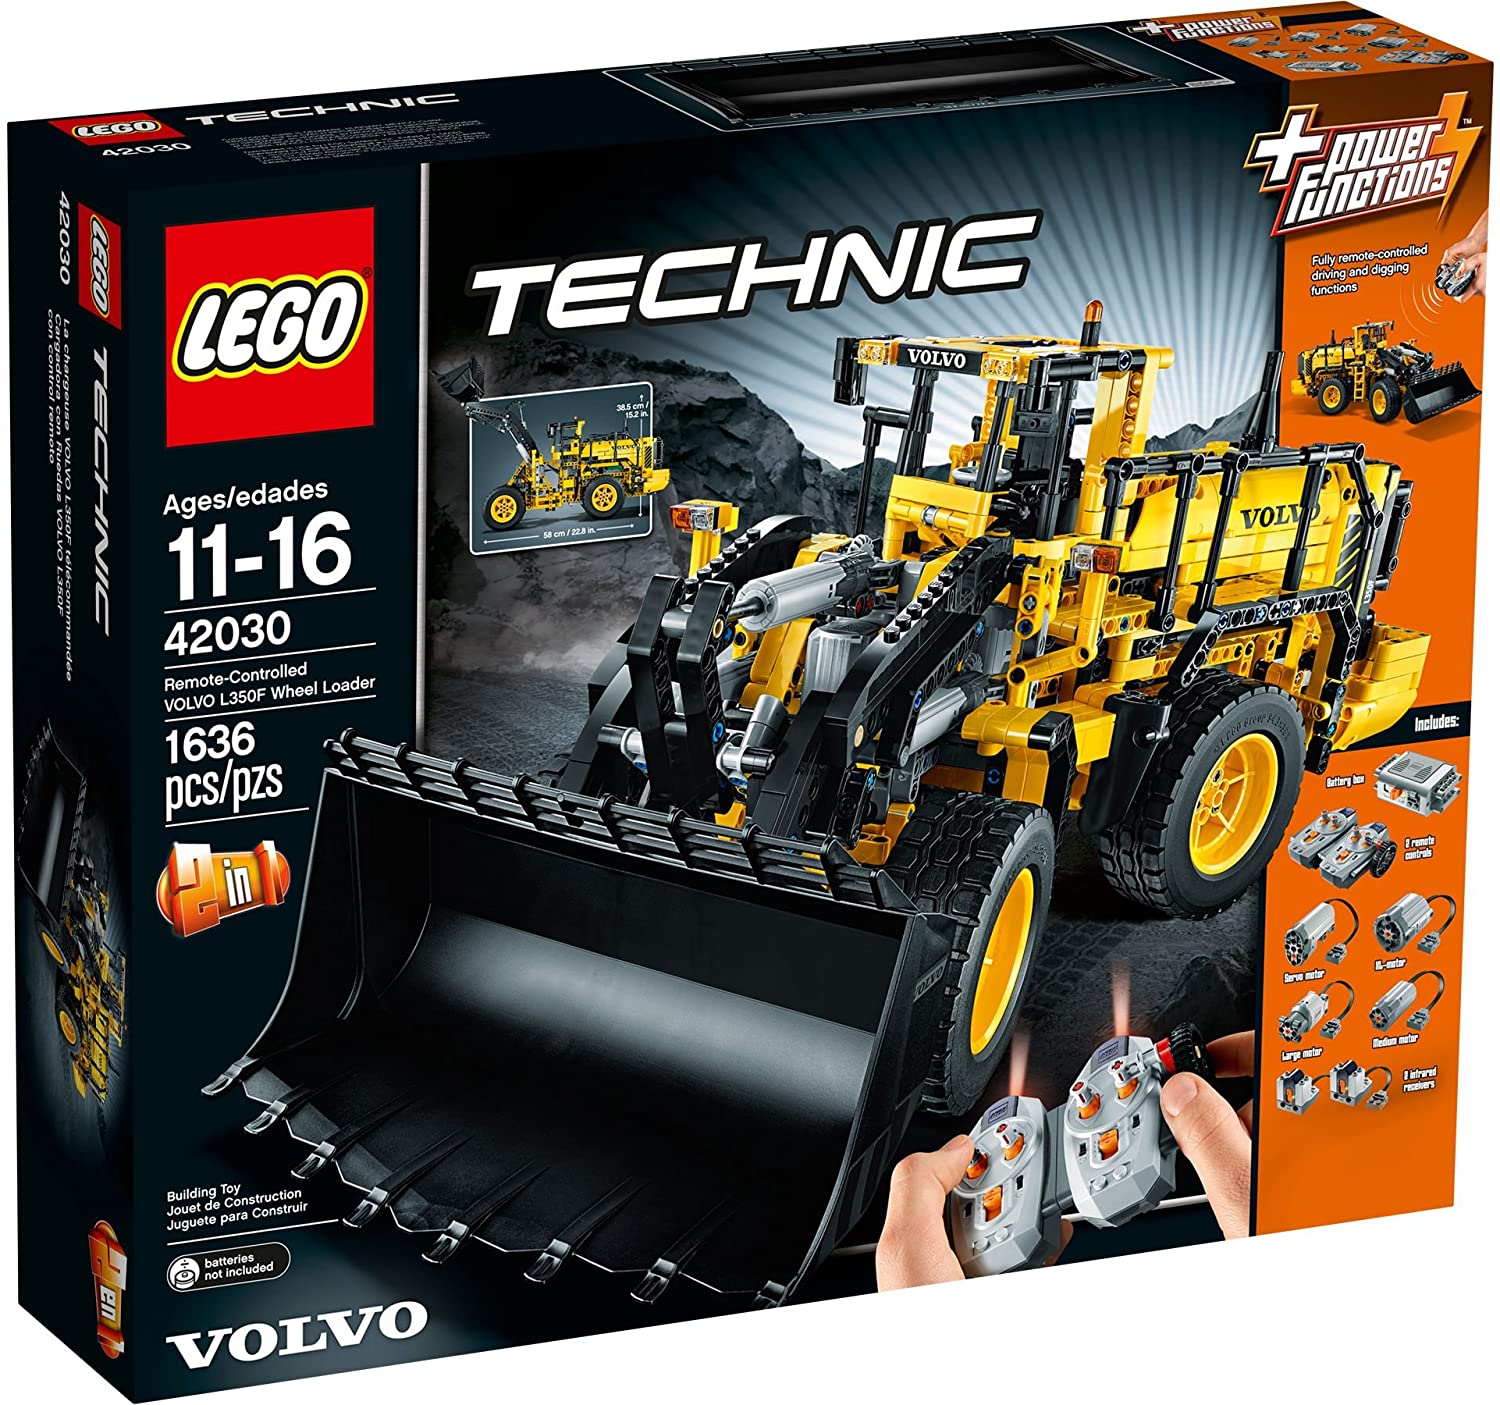 LEGO Technic VOLVO L350F Radlader (42030) - im GOLDSTIEN.SHOP verfügbar mit Gratisversand ab Schweizer Lager! (5702015122580)